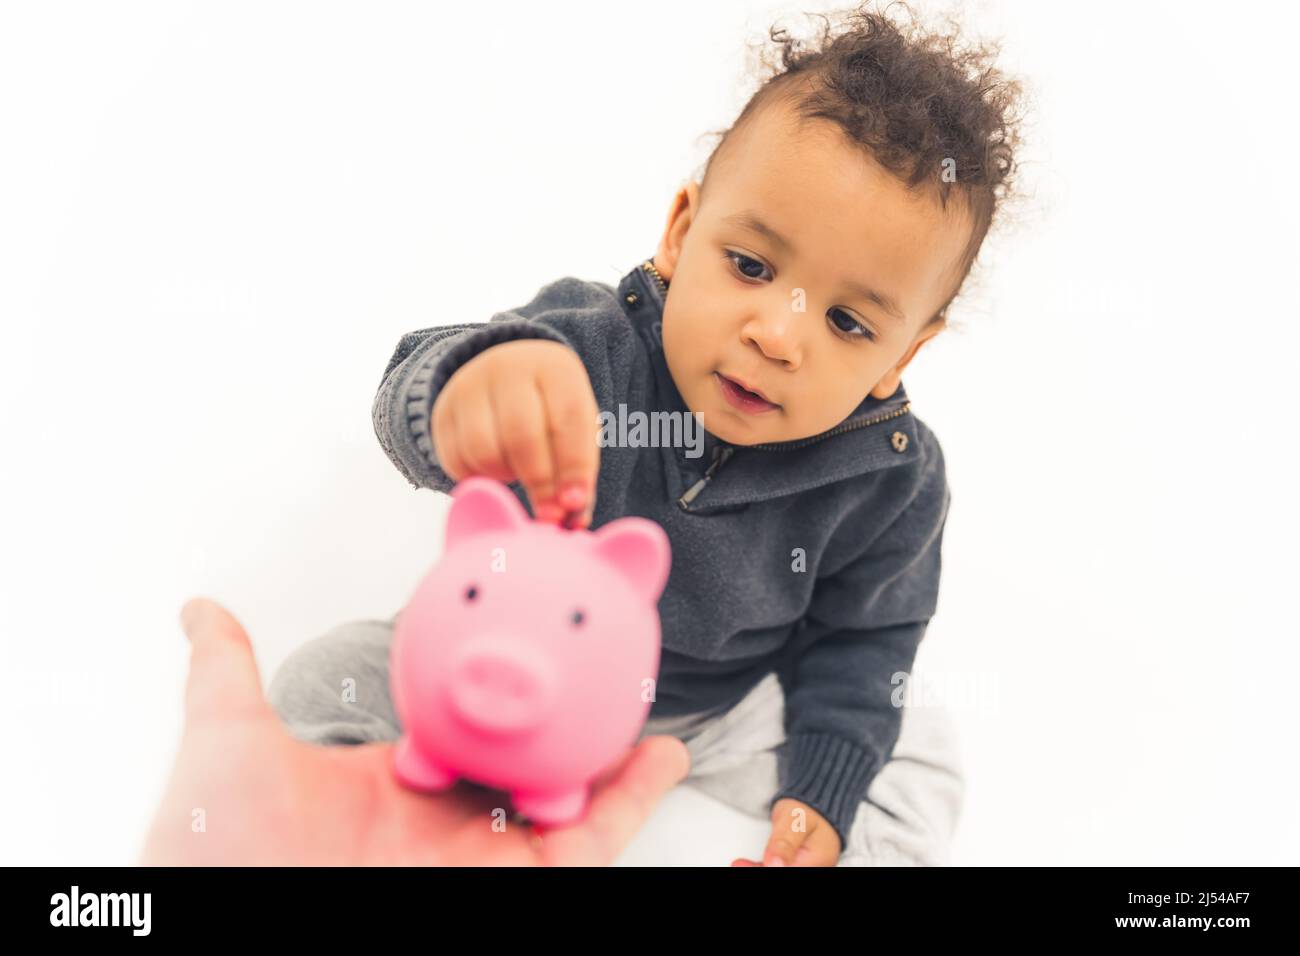 Allegro bambino che mette la moneta nella banca del piggy. Foto di alta qualità Foto Stock